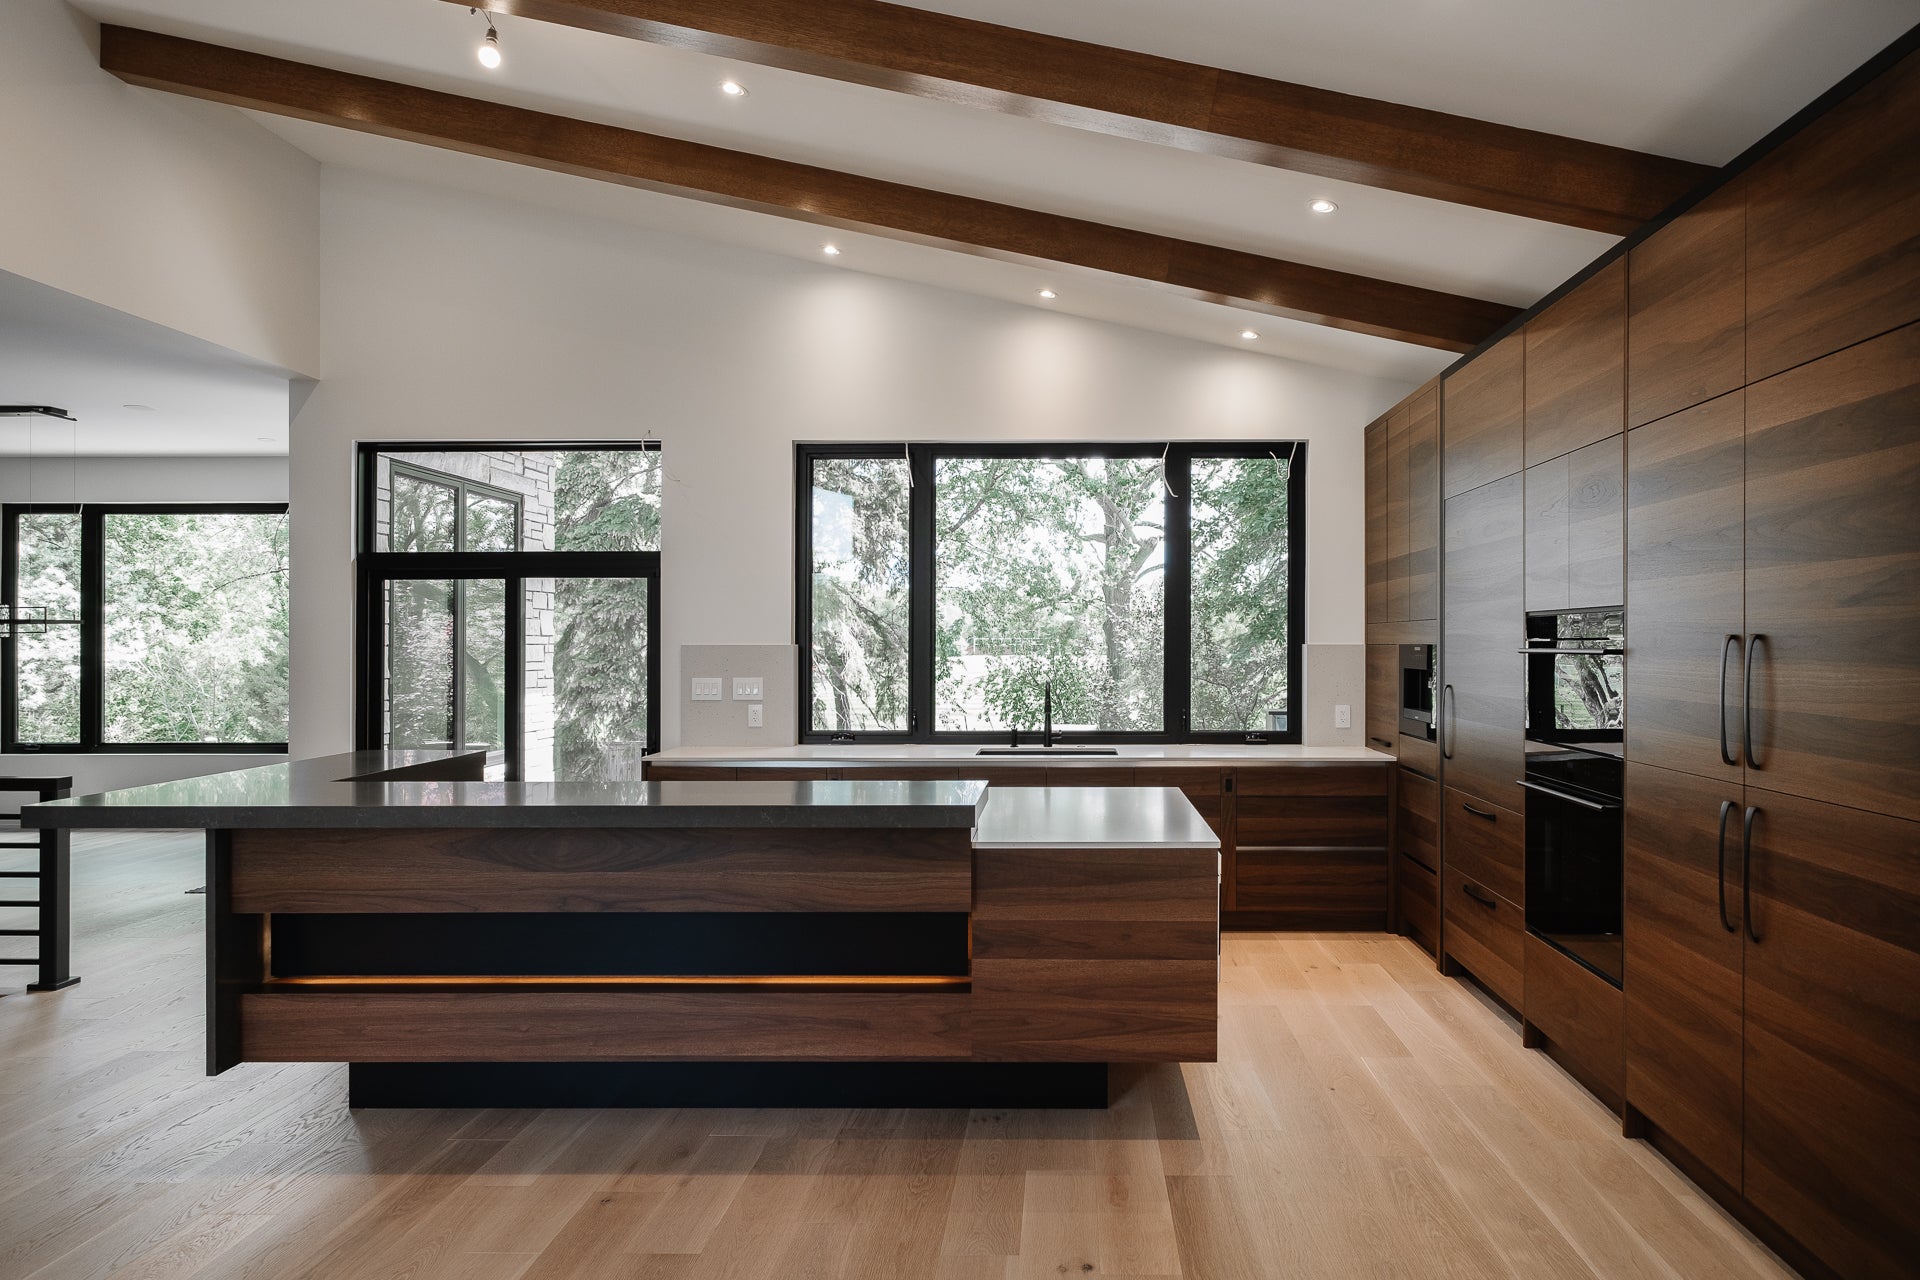 Shinnoki - wood kitchen - dark wood kitchen - veneer kitchen - dark veneer kitchen 